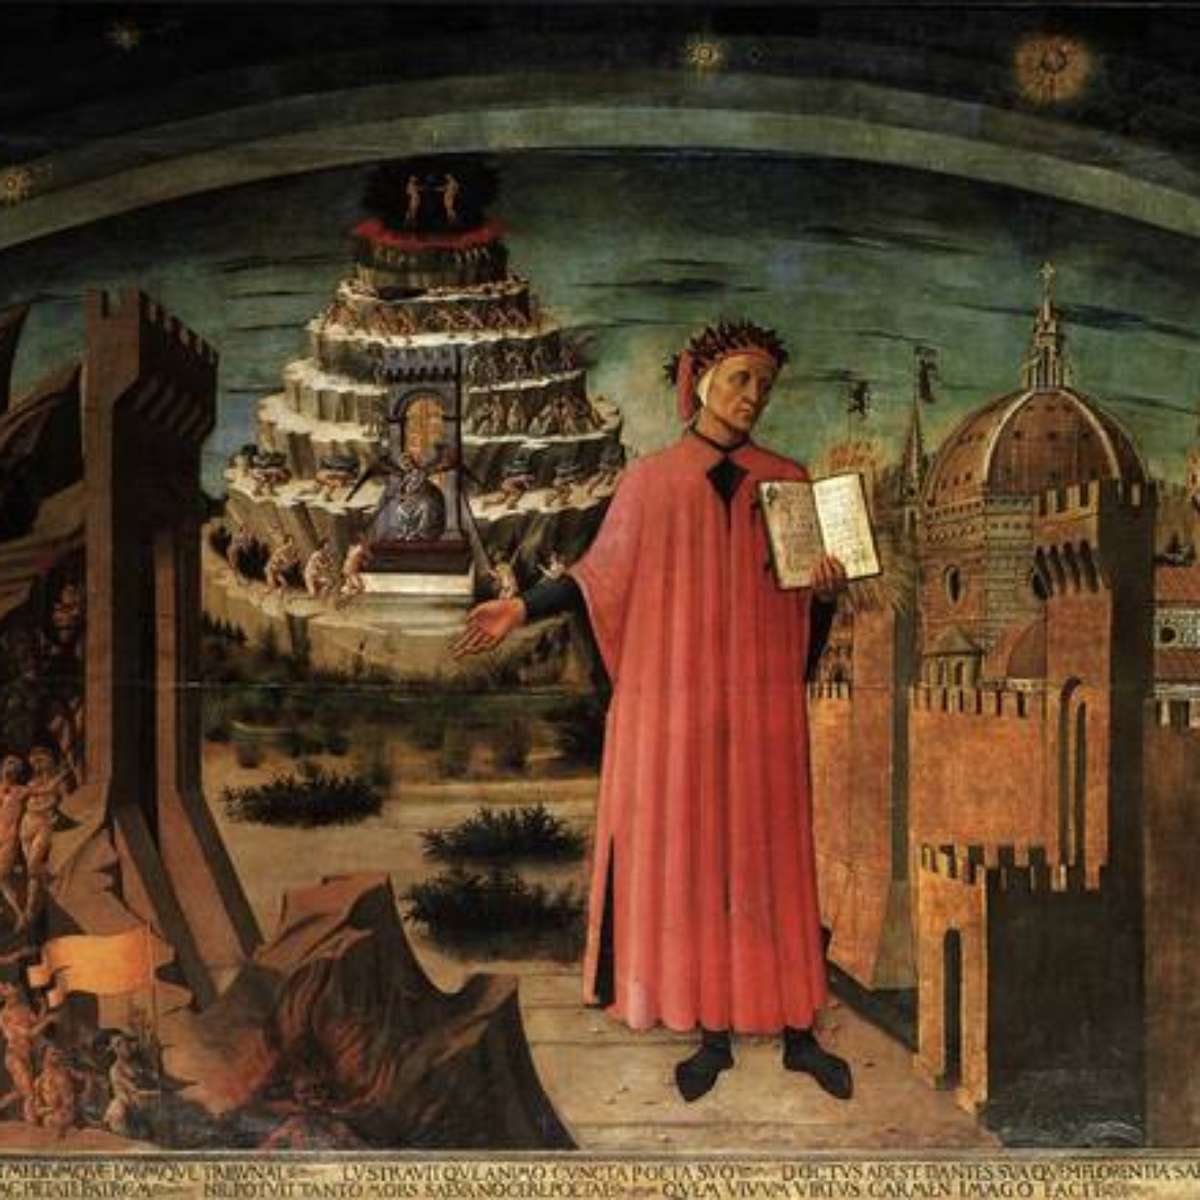 Abanhe'enga: A inscrição da porta do inferno (Dante Alighieri)